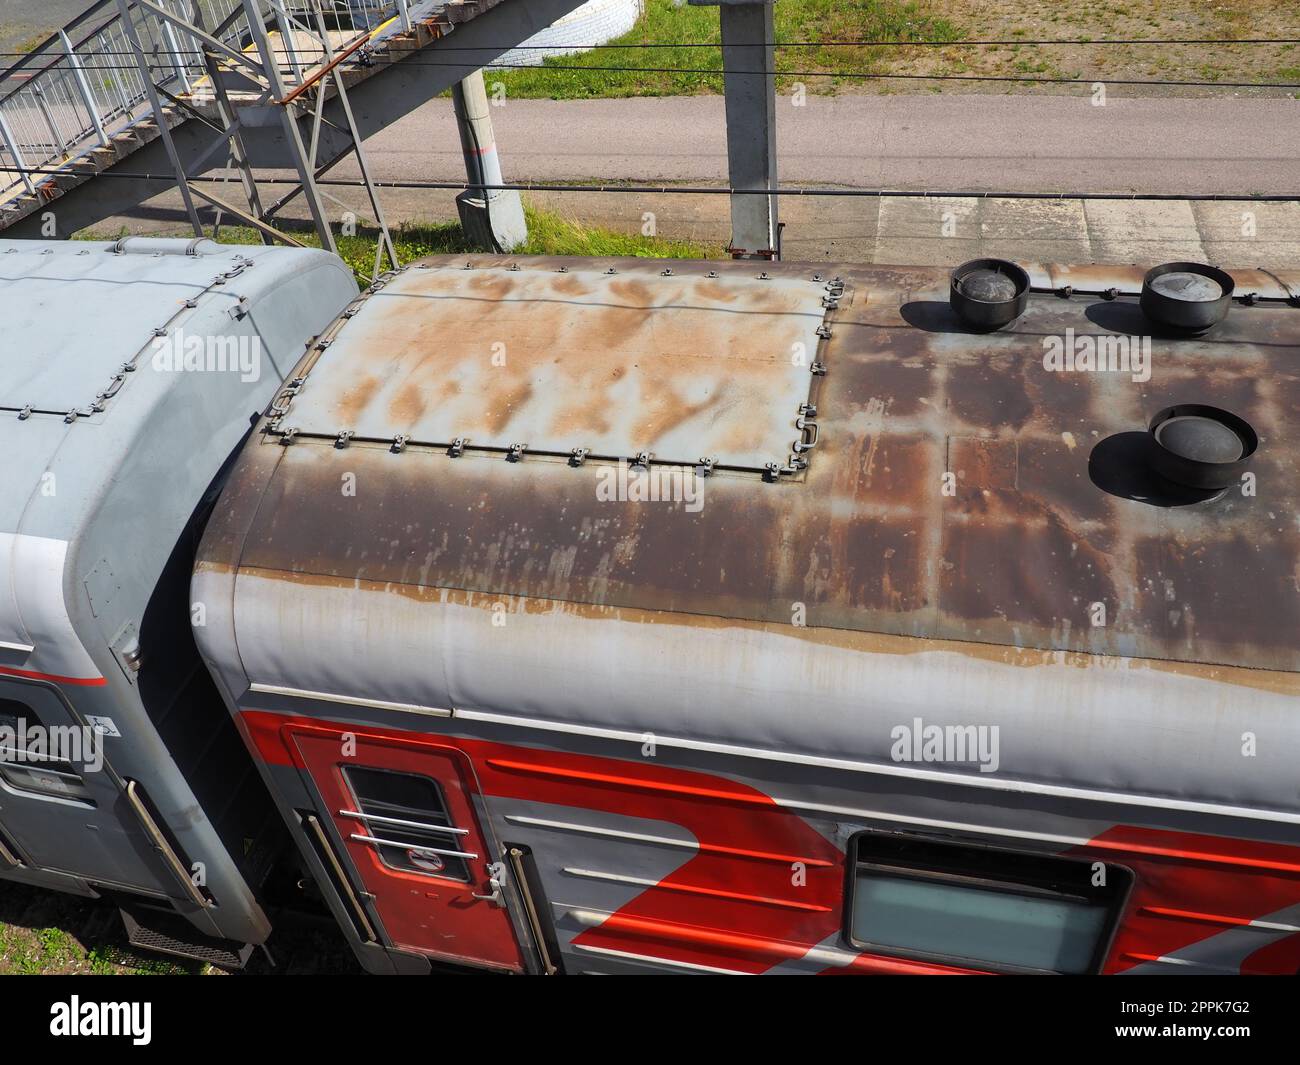 Svir, Russie 6 août 2021 vue de dessus du train des chemins de fer russes. Un vieux chariot gris et un toit rouillé avec des tuyaux de ventilation. Autocouplage des voitures particulières. Transport de personnes sur les routes interurbaines Banque D'Images